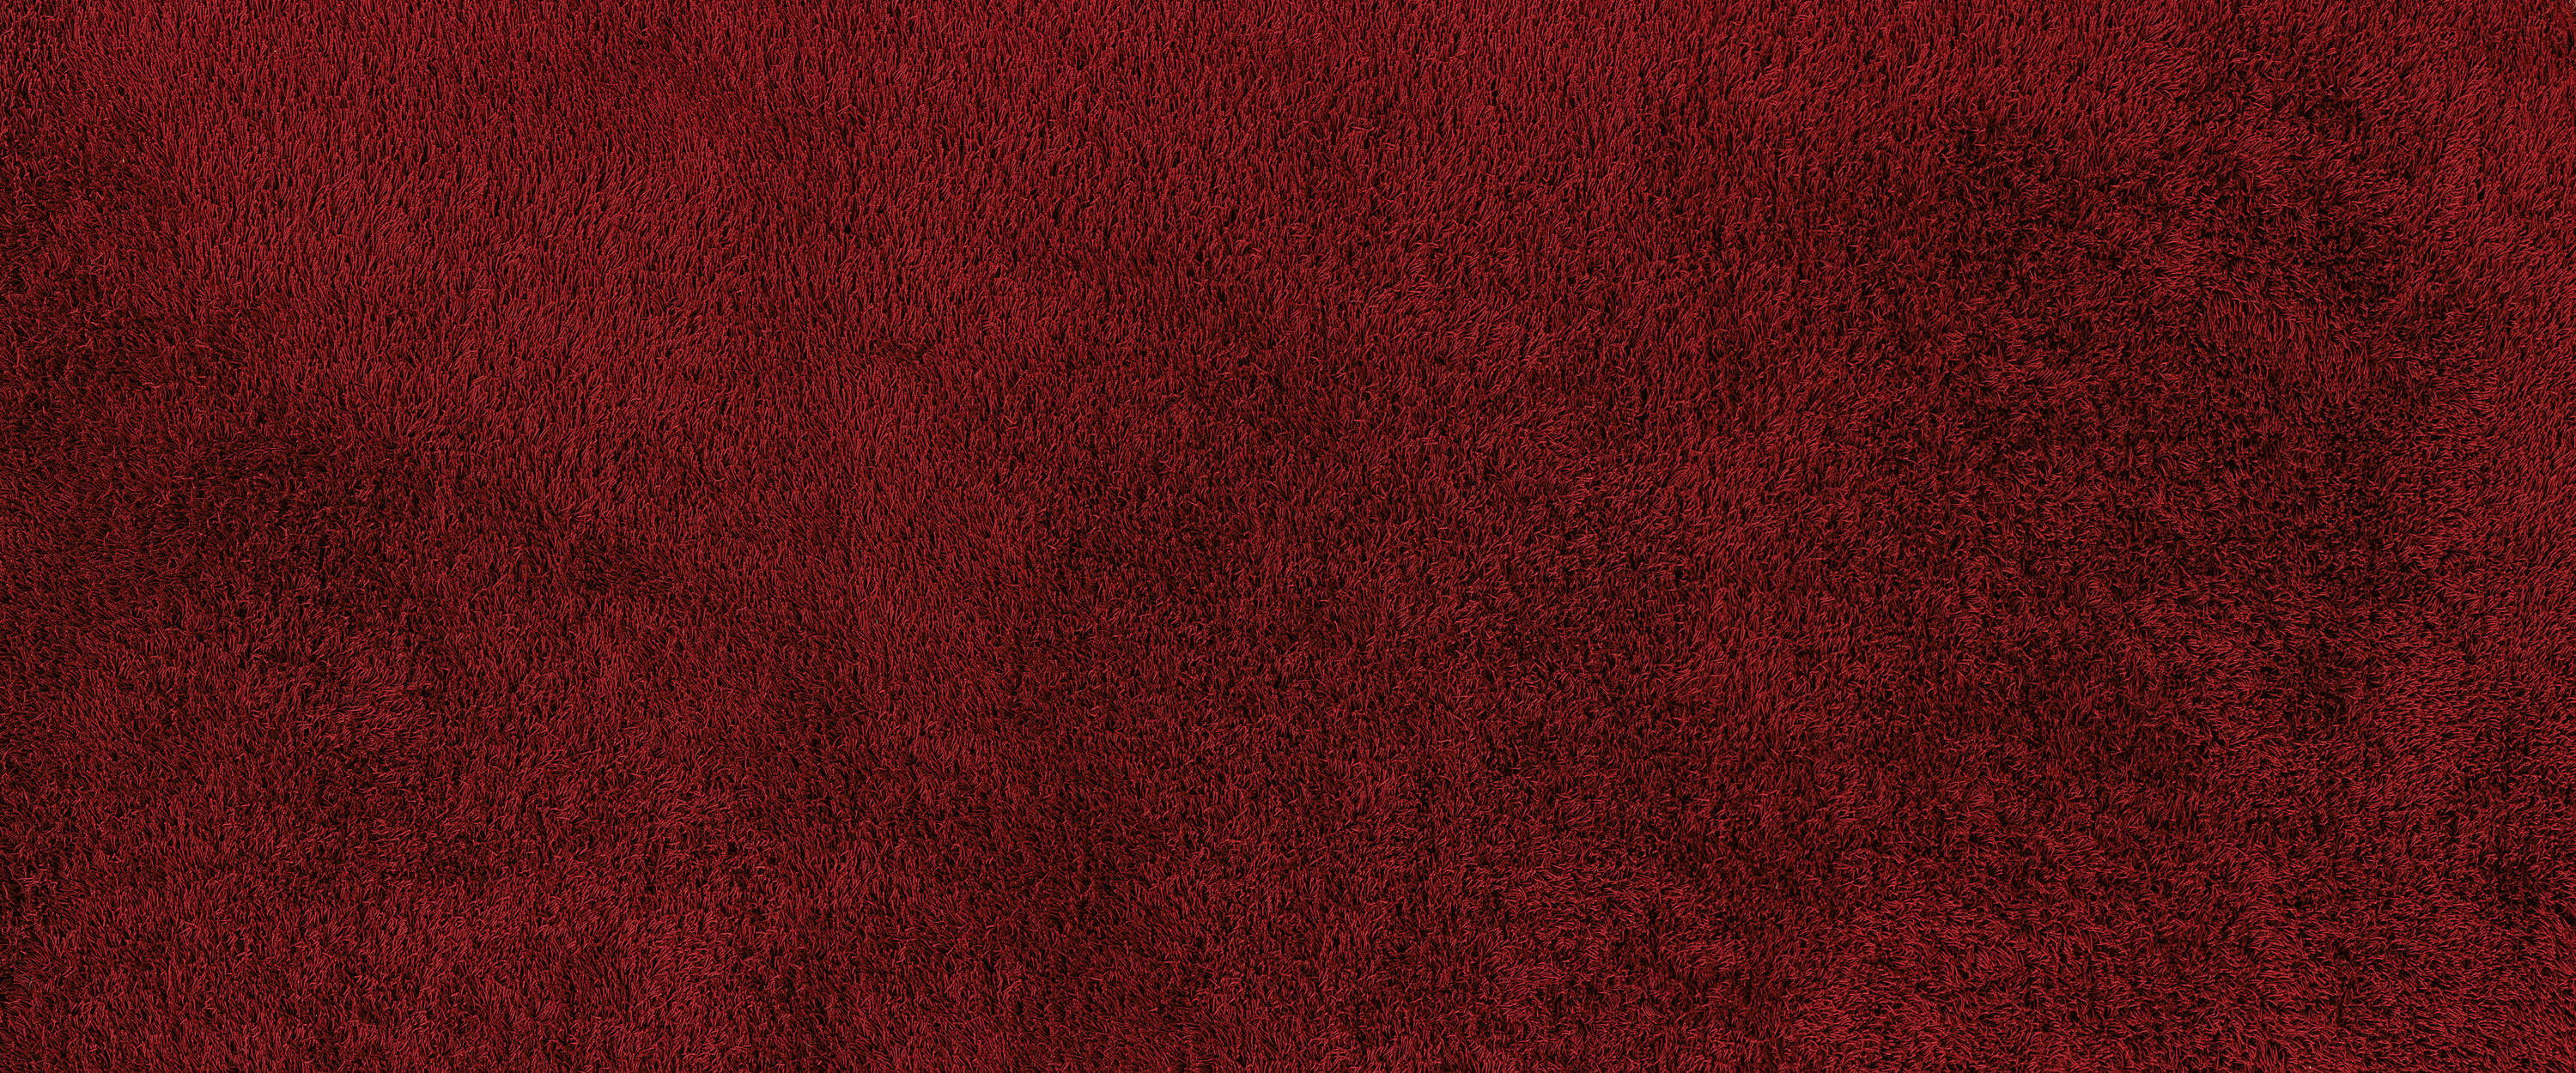             Fototapete Detailaufnahme eines roten Teppichs
        